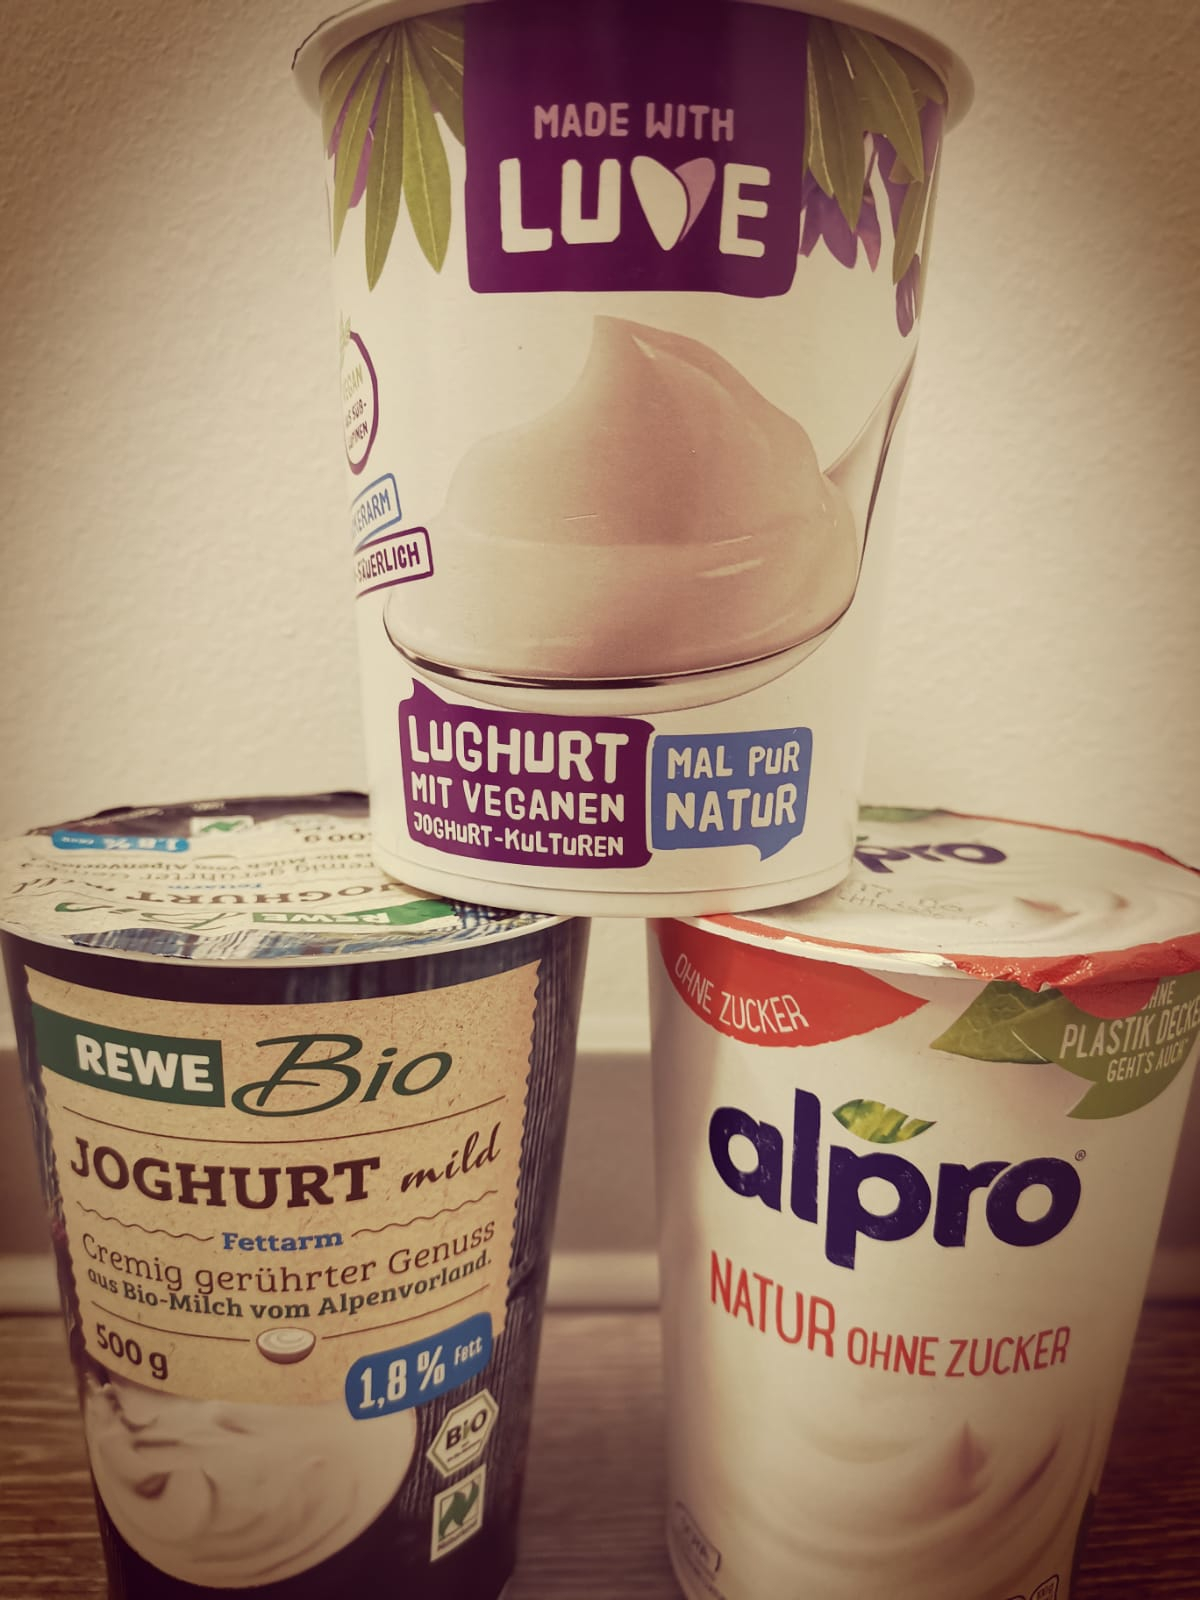 Neue Runde, neues Produkt. Heute in der Kritik: Joghurt-Alternativen. Foto: kat